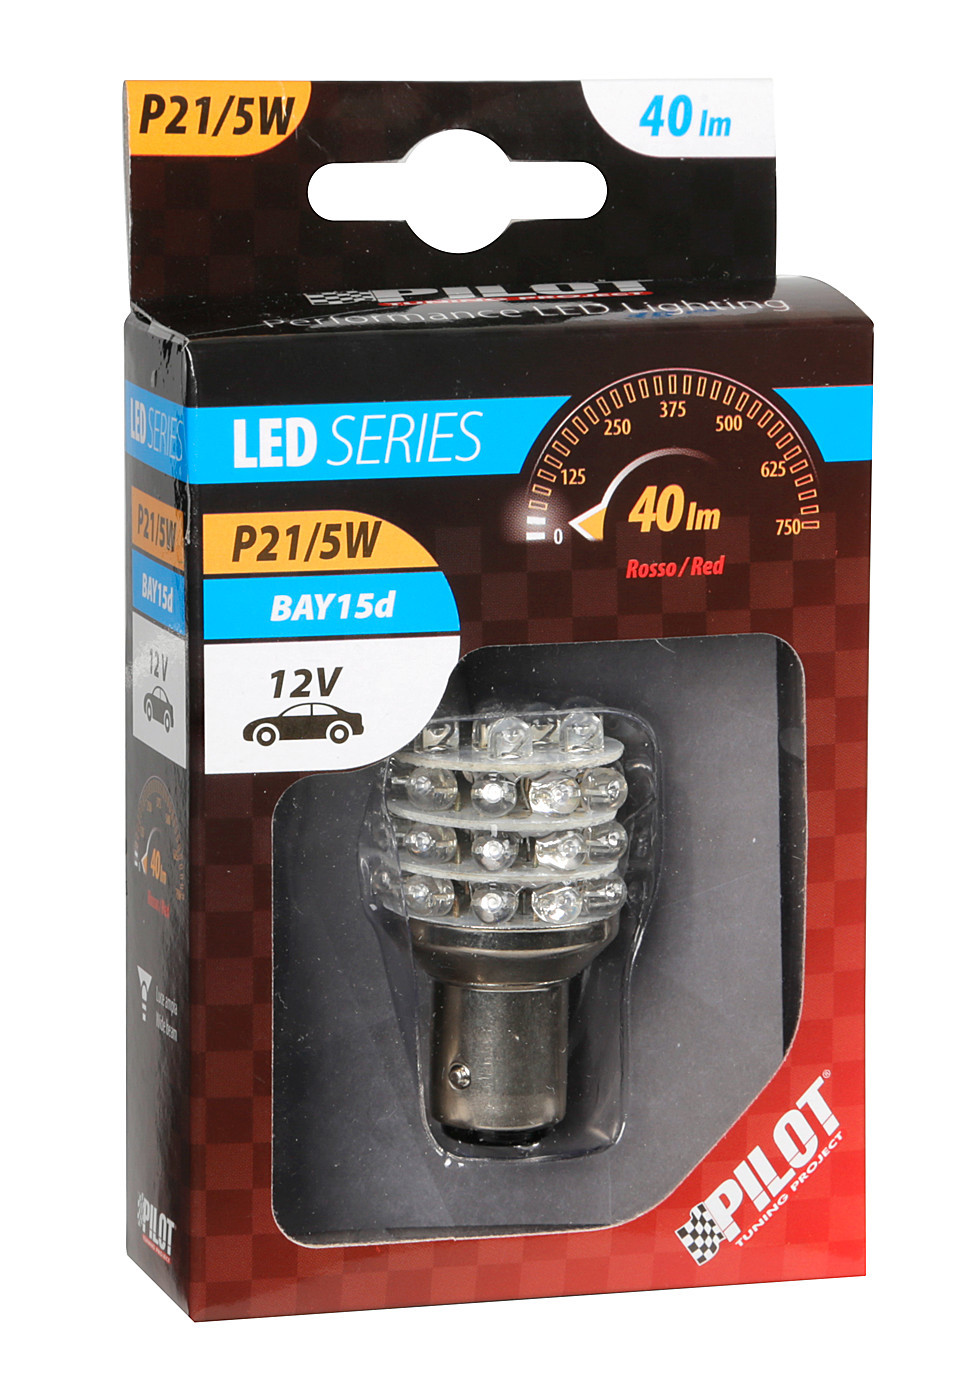 12V Multi-Led Lamp 36Led P21/5W Rear driving, Fog lamp BAY15d 1pcs - Red thumb